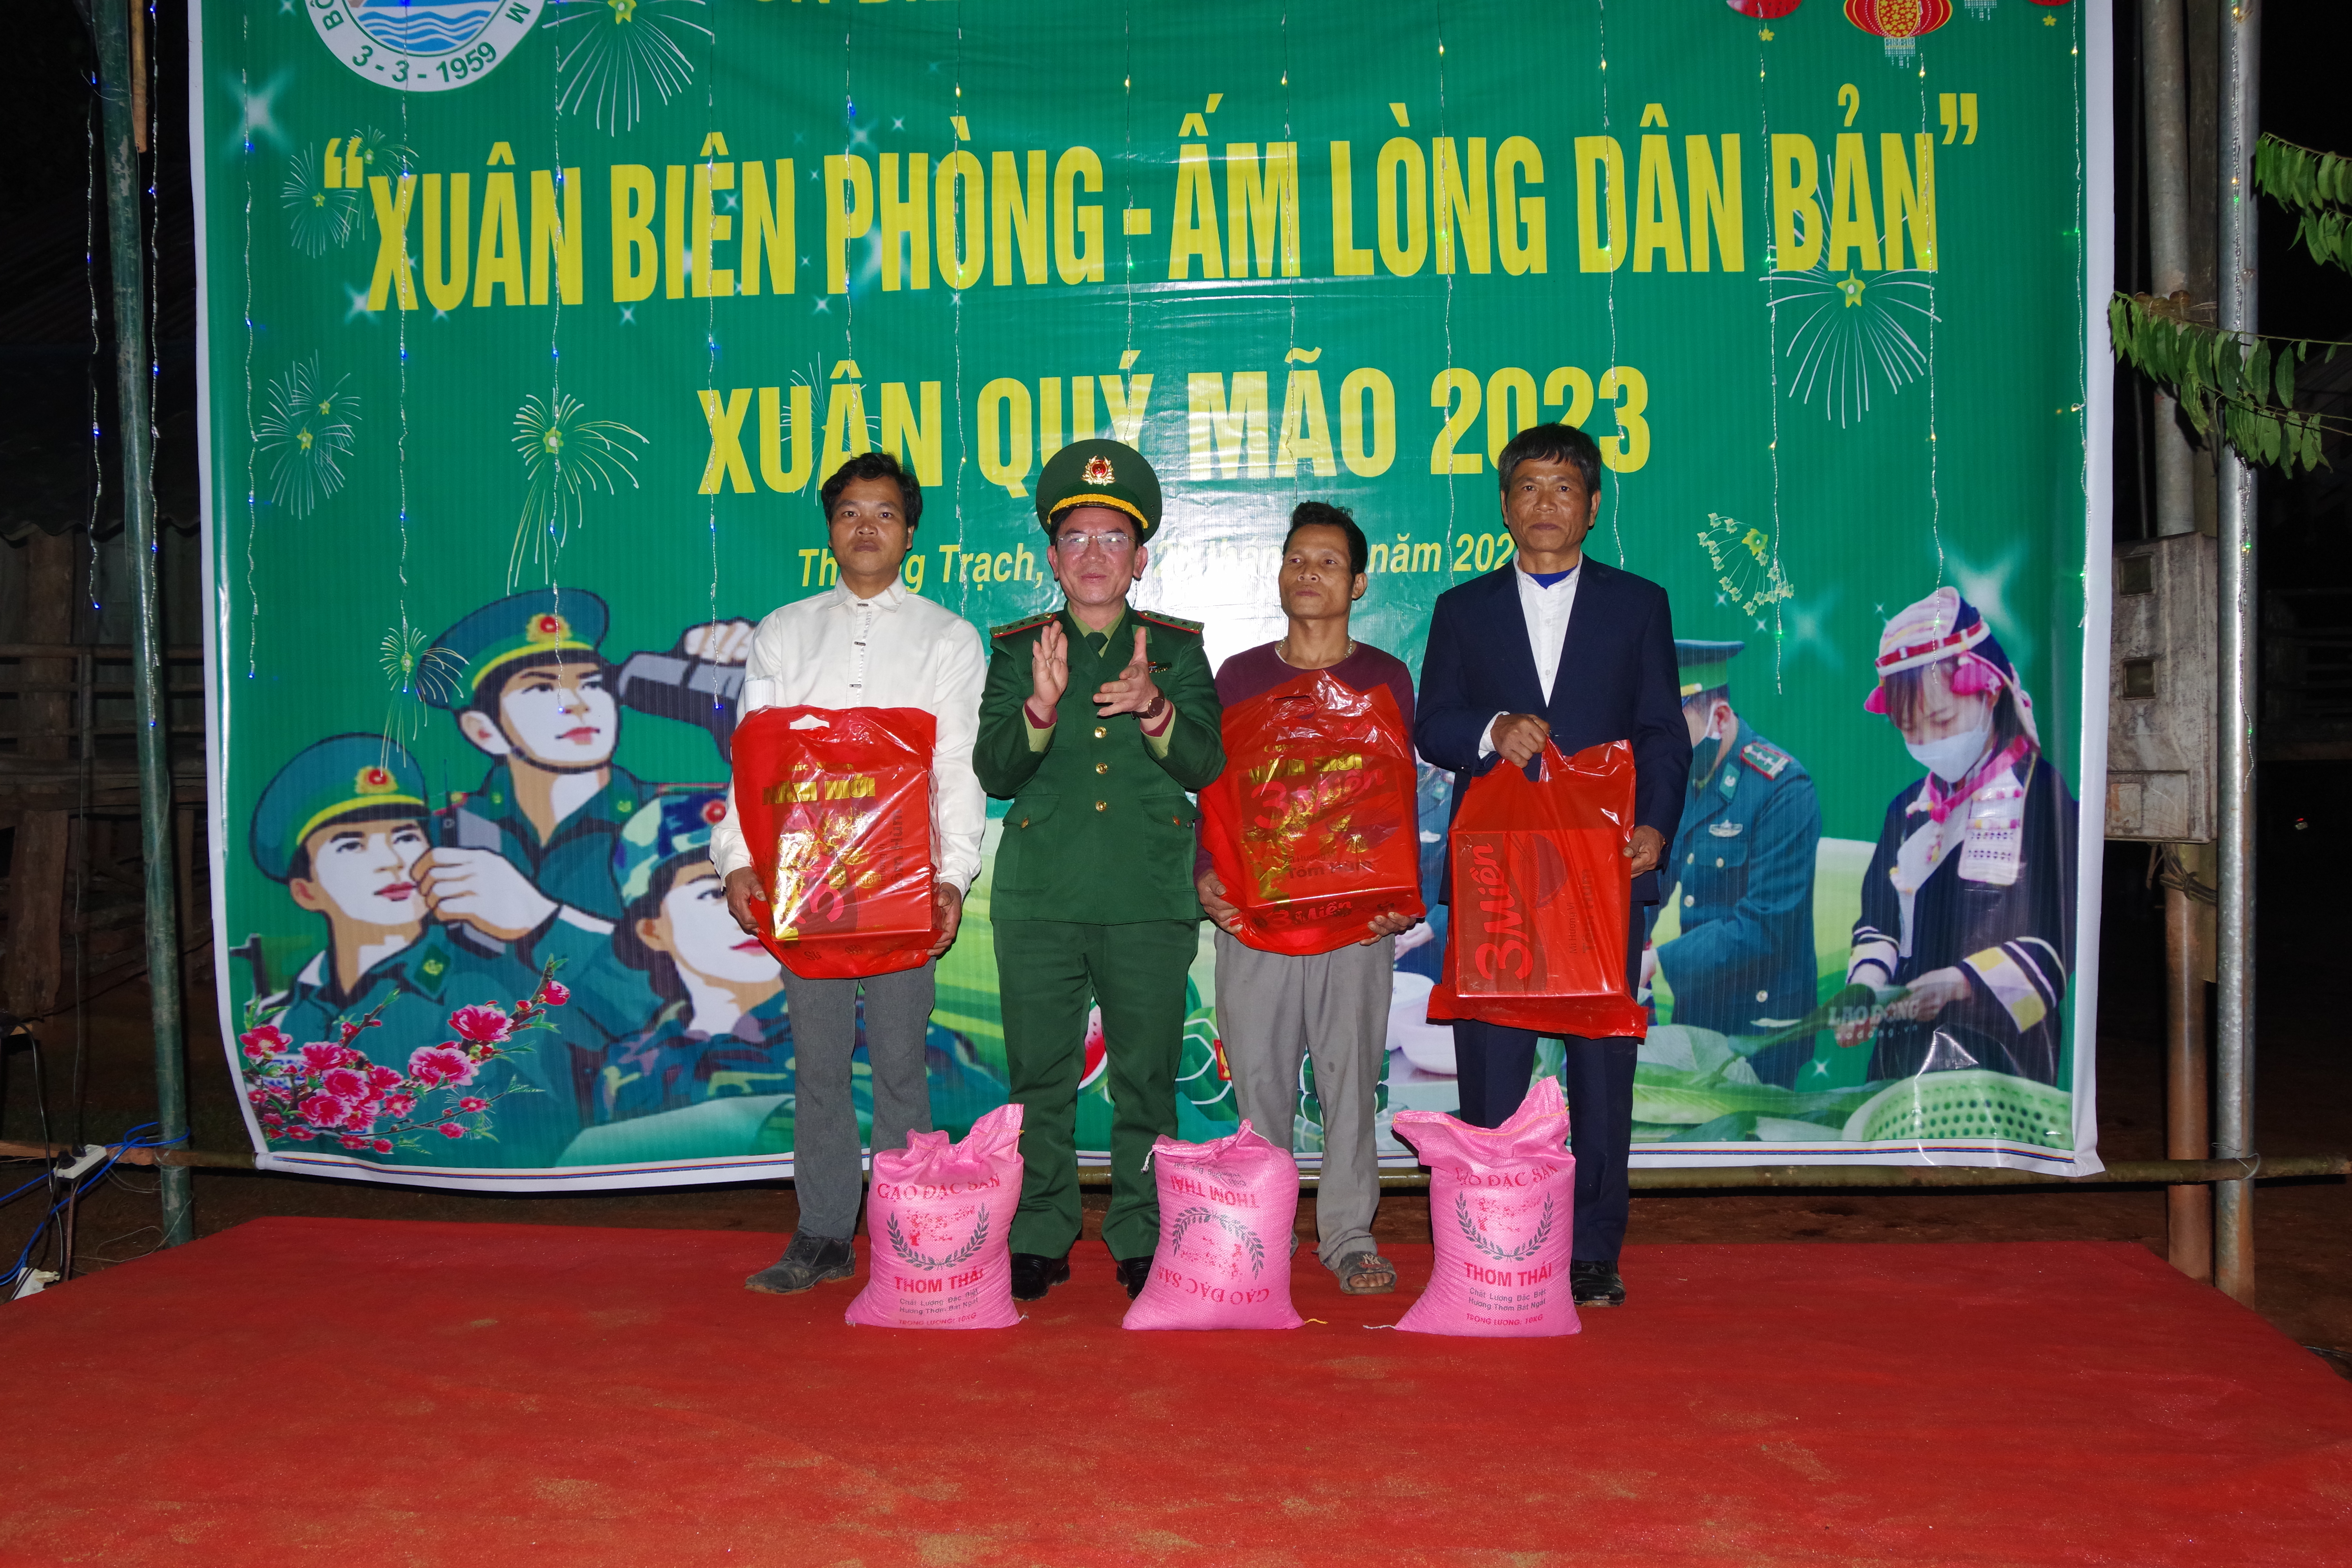  Đồng chí Thượng tá Ngô Minh Điền phó Chính ủy BĐBP tỉnh Quảng Bình trao tặng quà cho các hộ nghèo và gia đình chính sách trên khu vực biên giới.